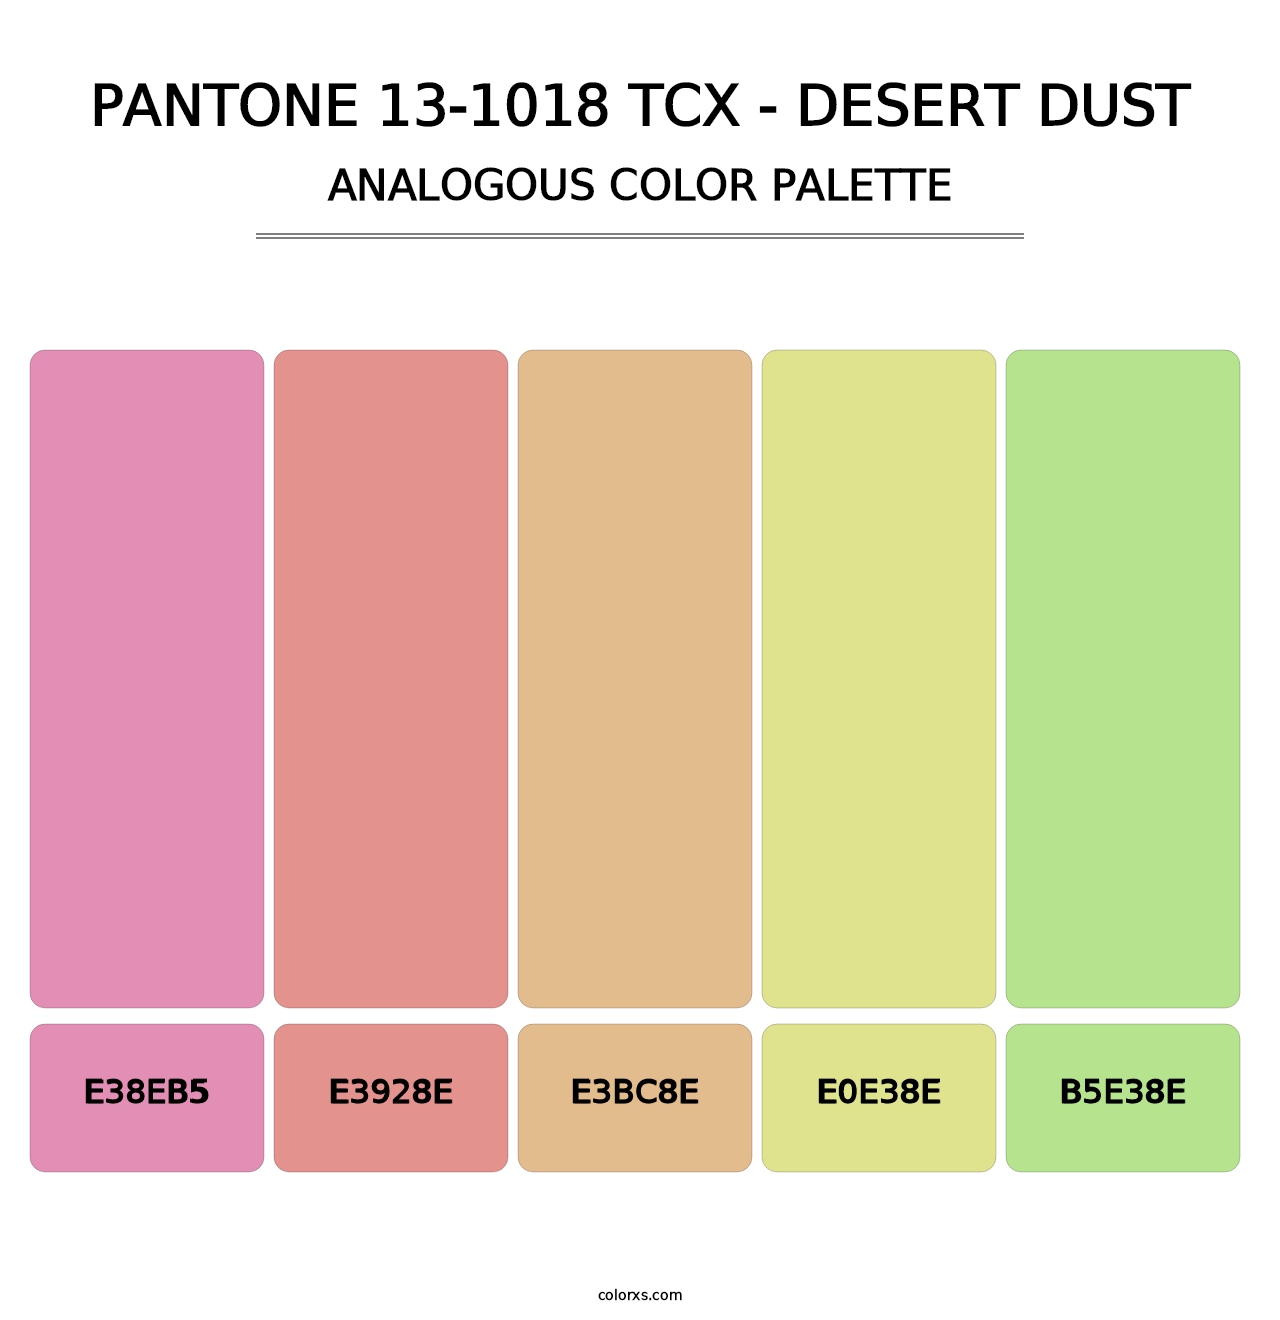 PANTONE 13-1018 TCX - Desert Dust - Analogous Color Palette